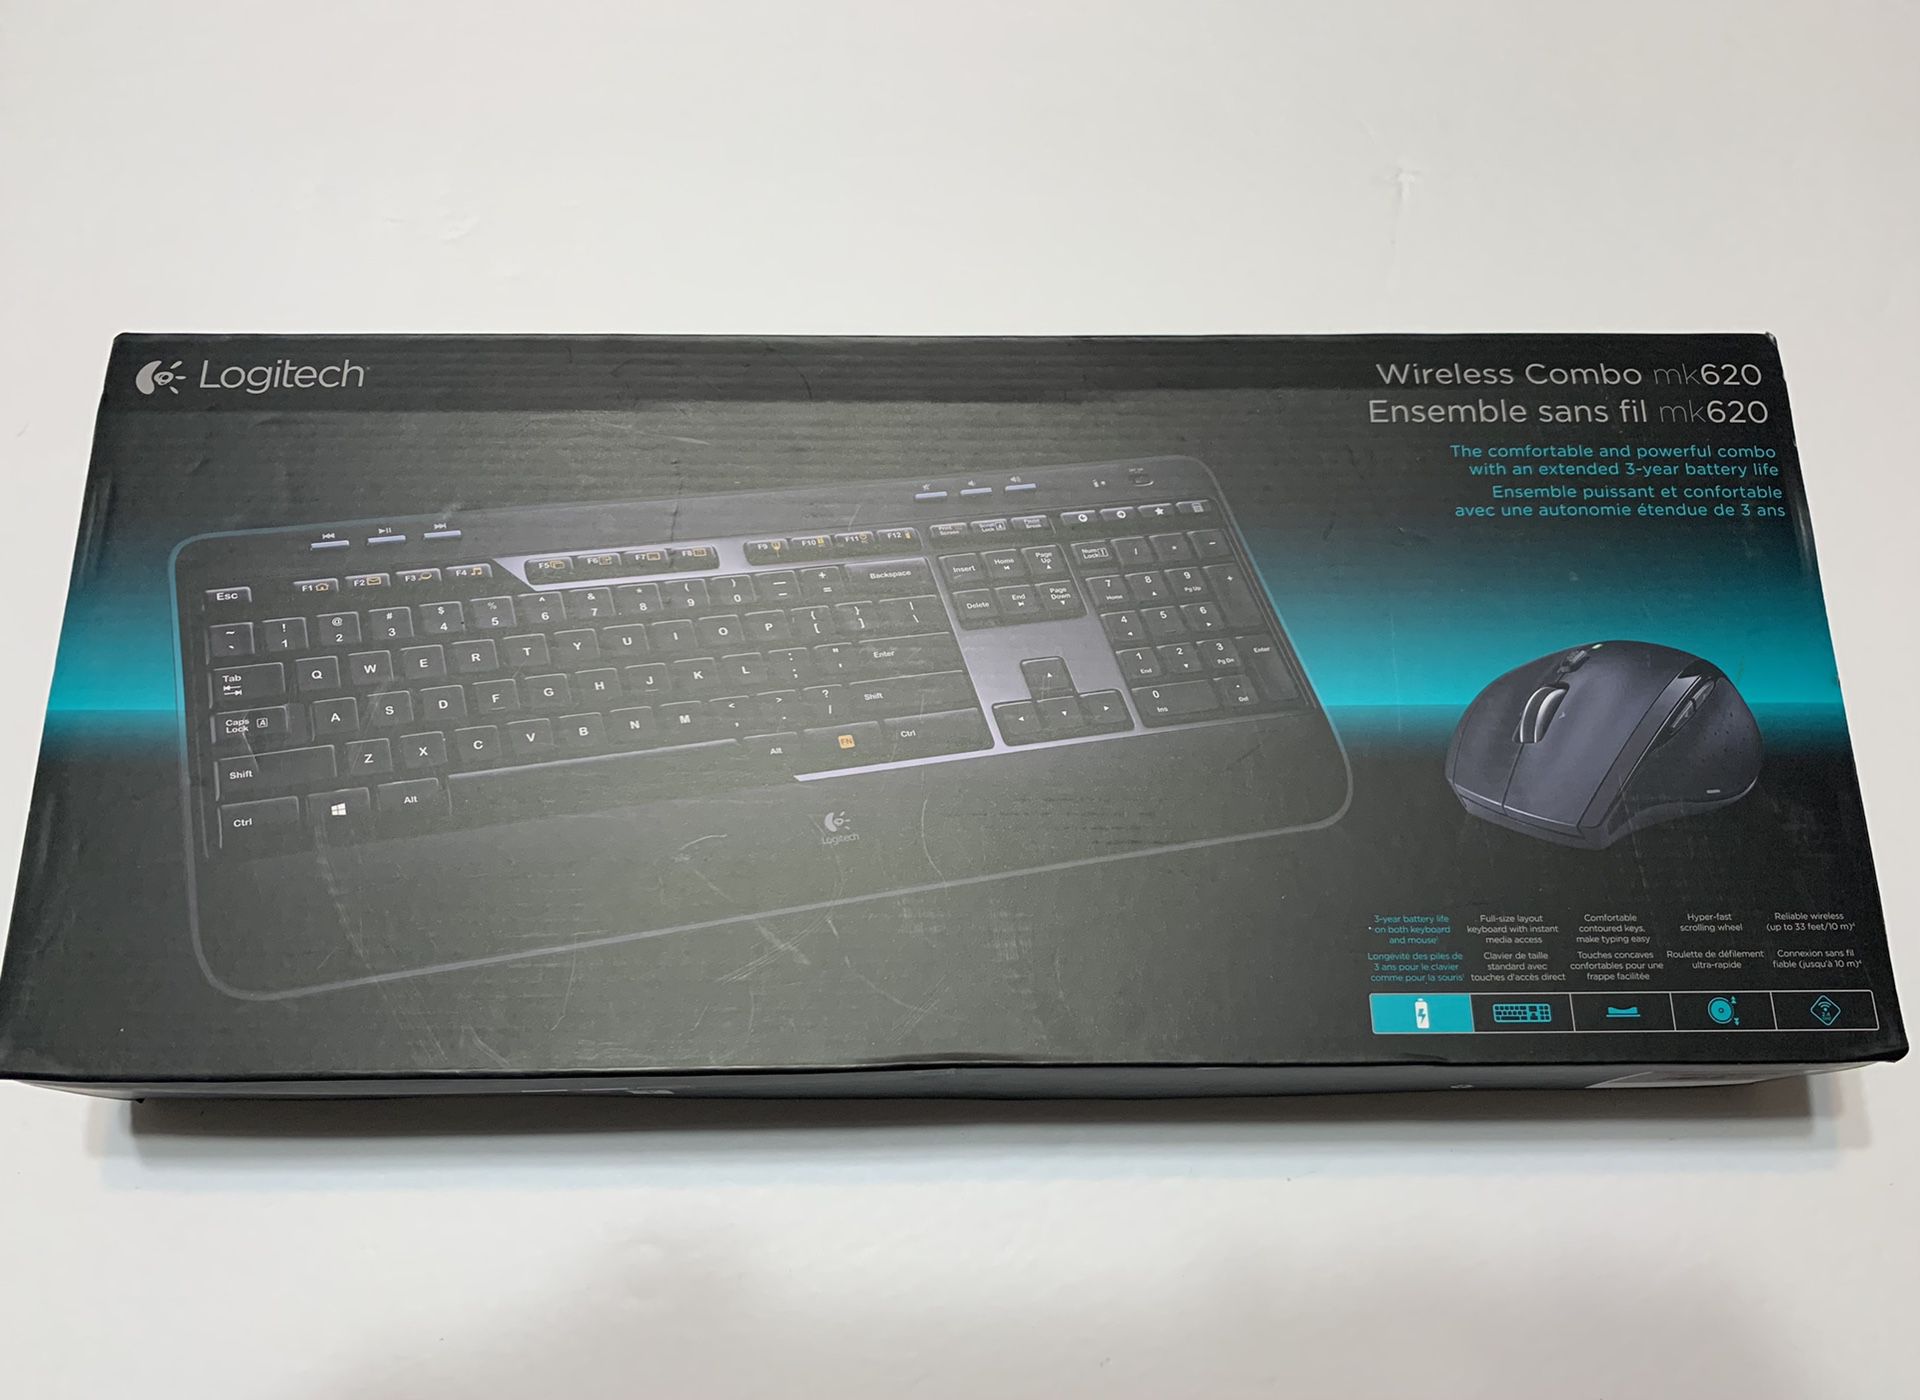 Logitech Wireless Combo MK620 mouse and keyboard